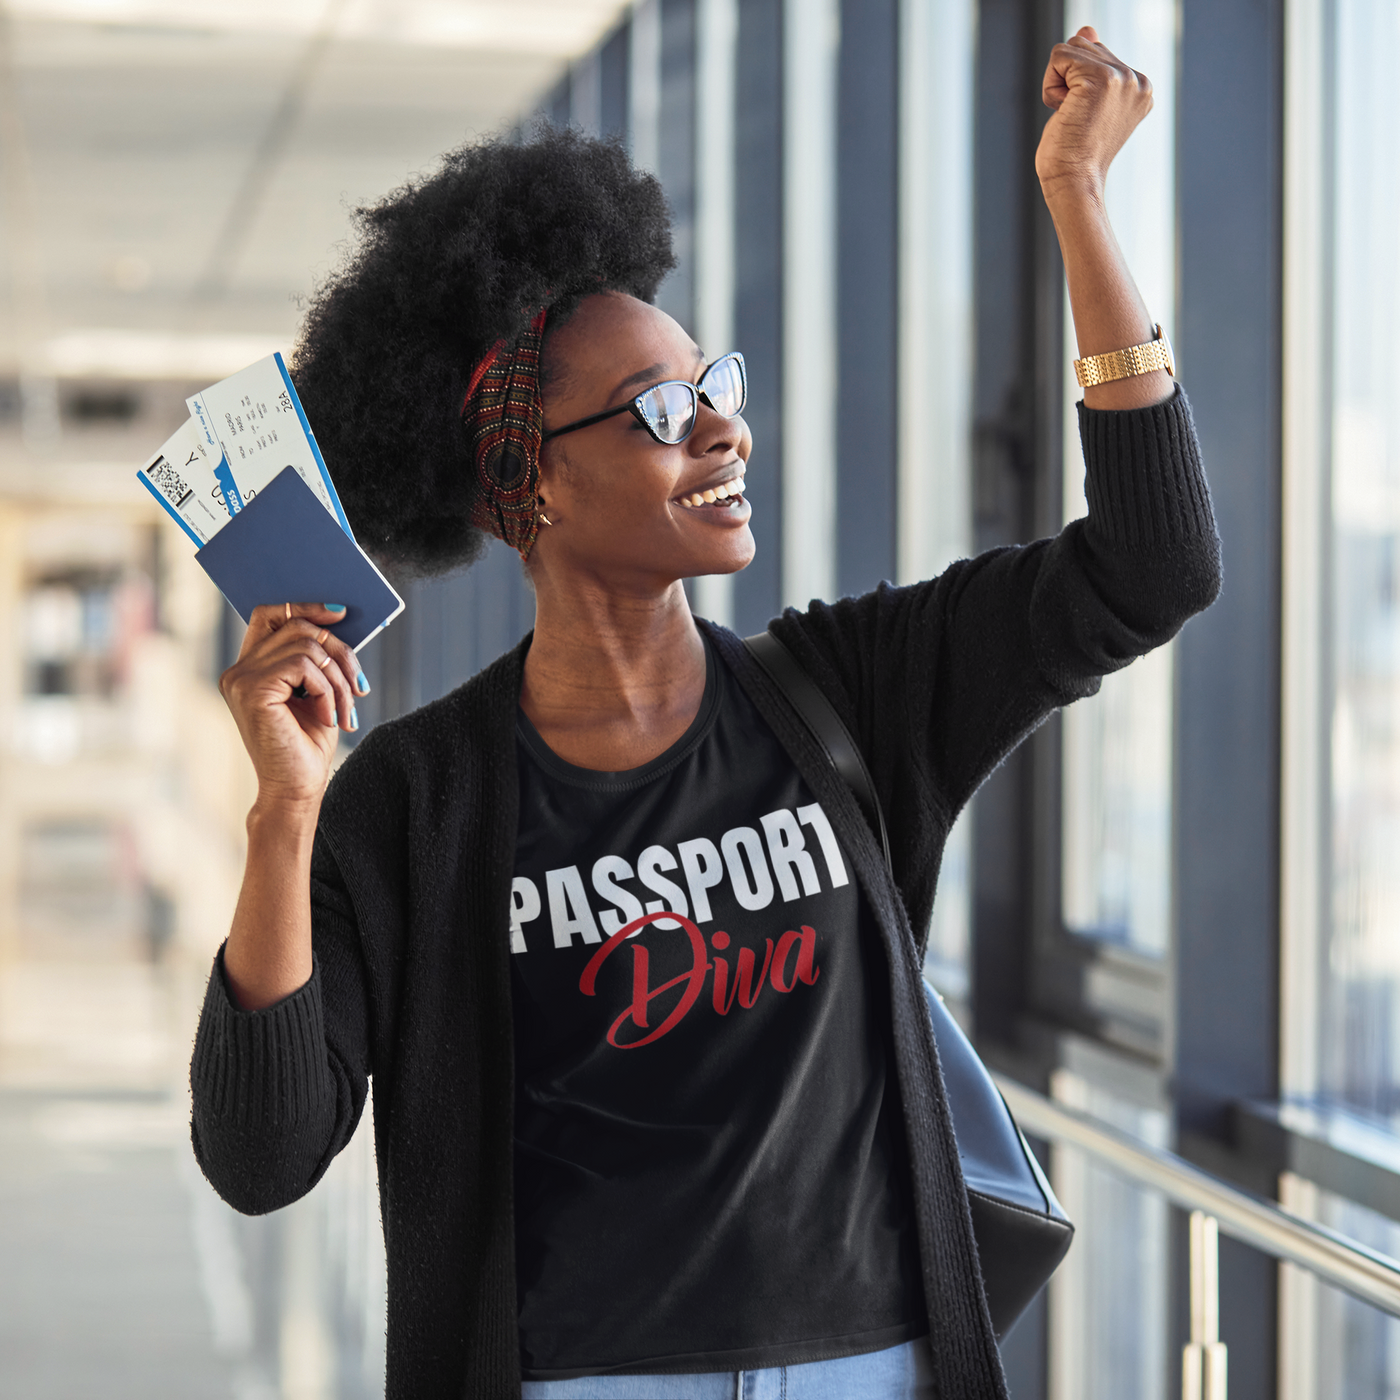 Passport Diva Women's Shirt - Black